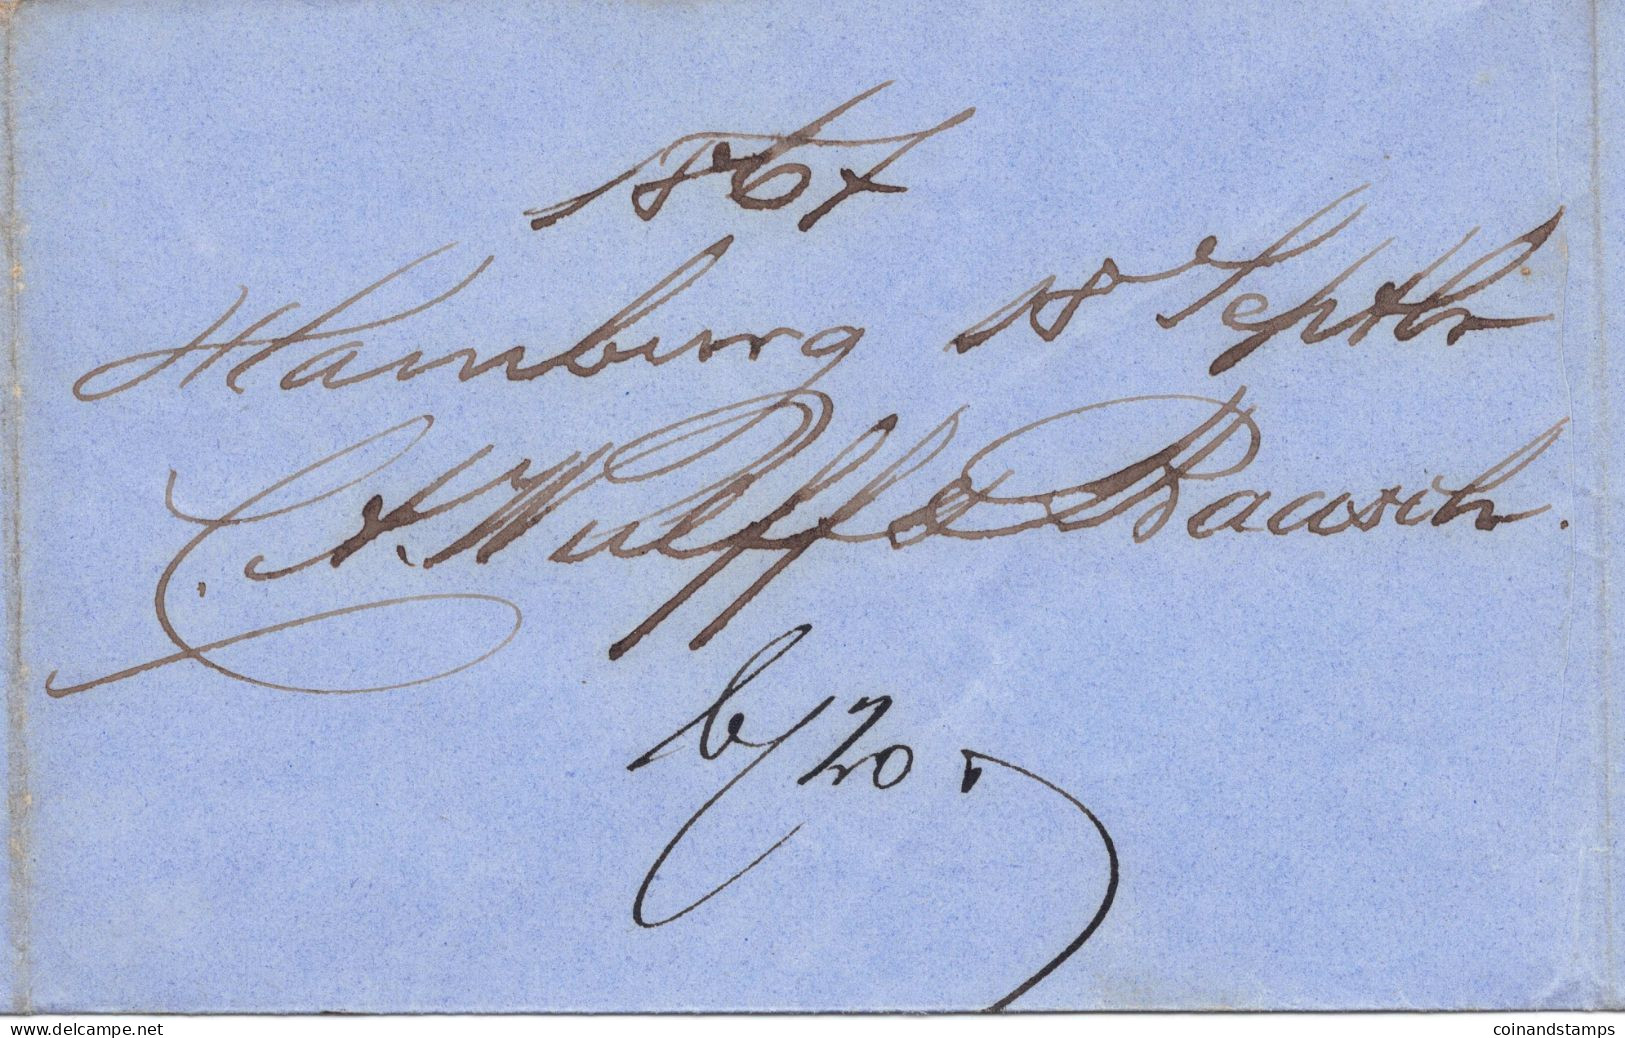 Hamburg Brief mit Mi.-Nr.18a als EF. orig. gelaufen Hamburg 18/9 1867 nach Eybau über Ober Oderwitz, feinst